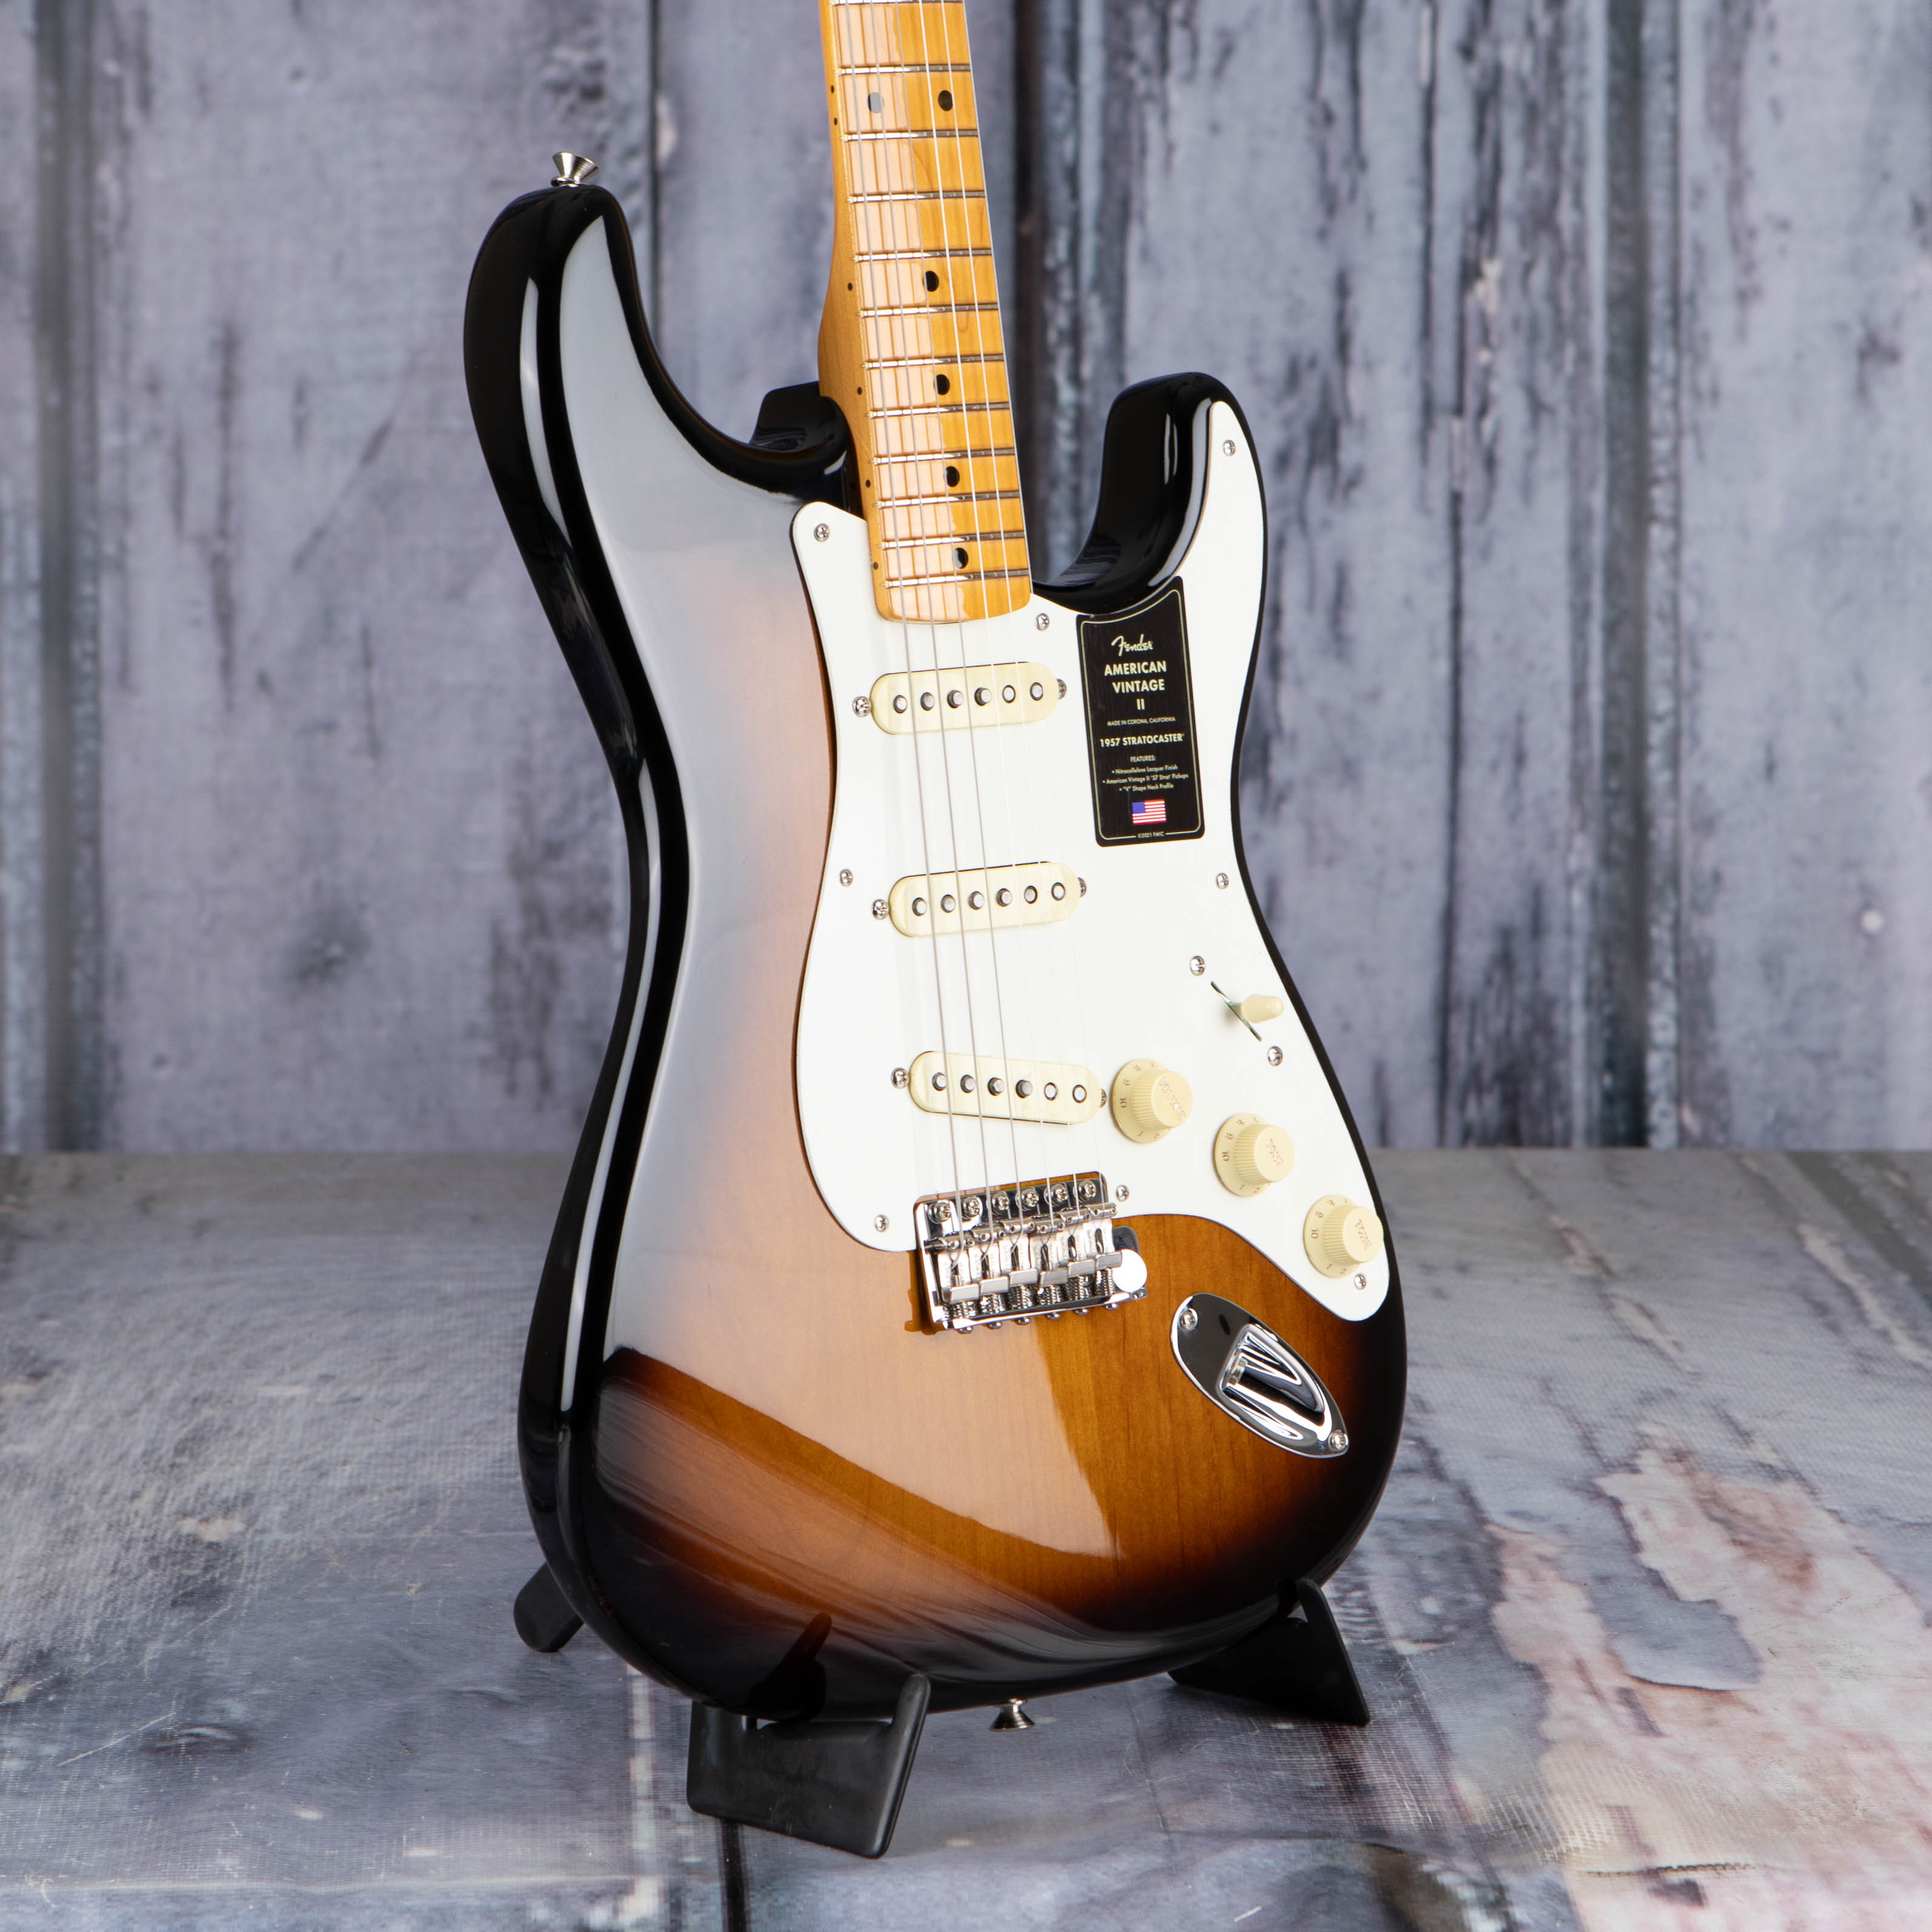 Fender American Vintage II 1957 Stratocaster Electric Guitar, 2-Color Sunburst, angle